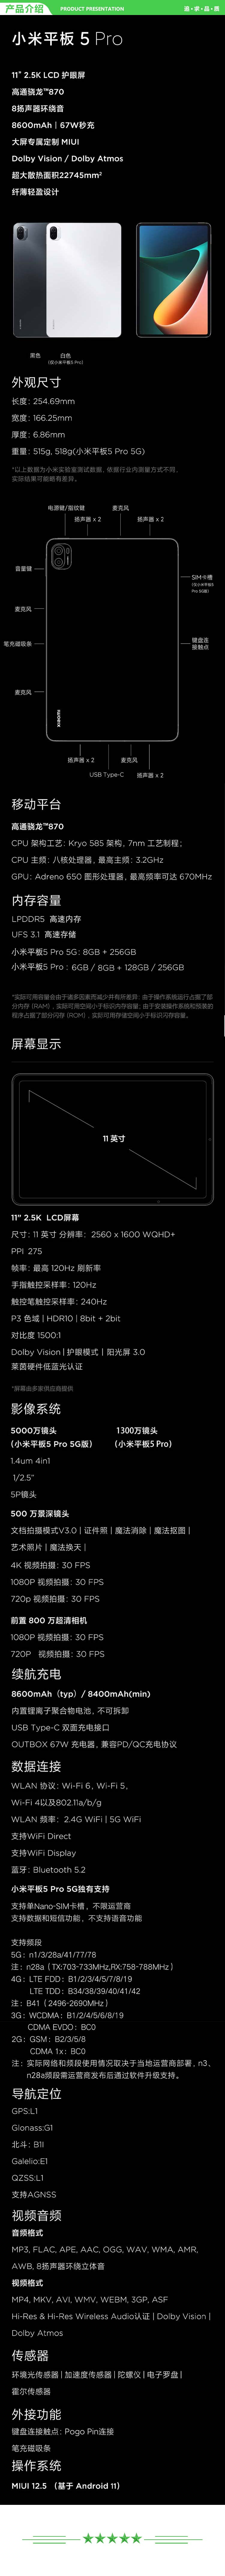 小米 xiaomi 平板5 Pro 平板电脑（11英寸2.5K高清 120Hz 骁龙860 6G+128GB 67W快充 杜比影音娱乐办公 白色）.jpg